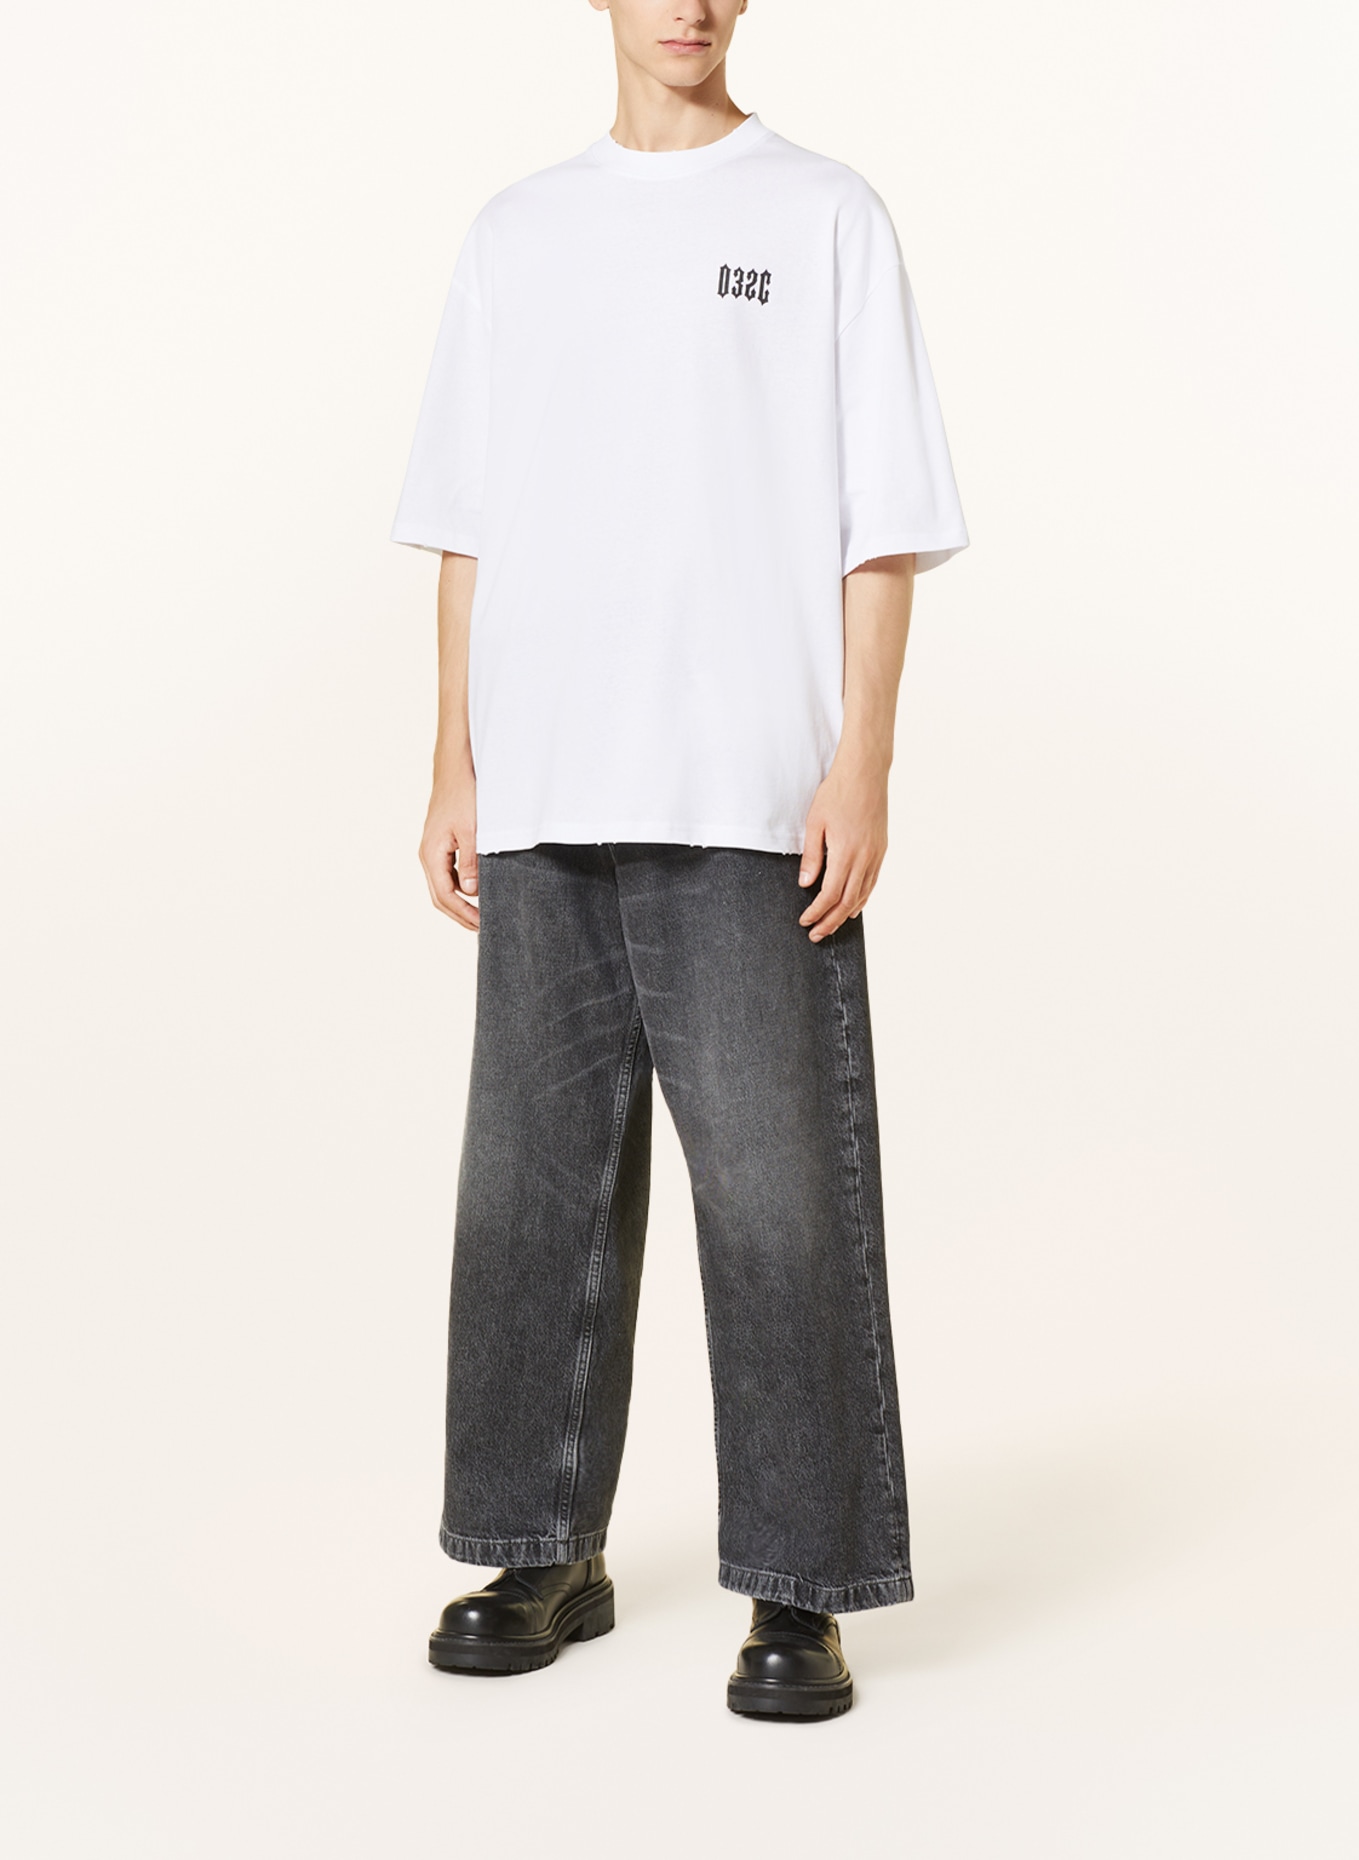 032c Oversized shirt CRUX, Color: WHITE/ BLACK (Image 3)